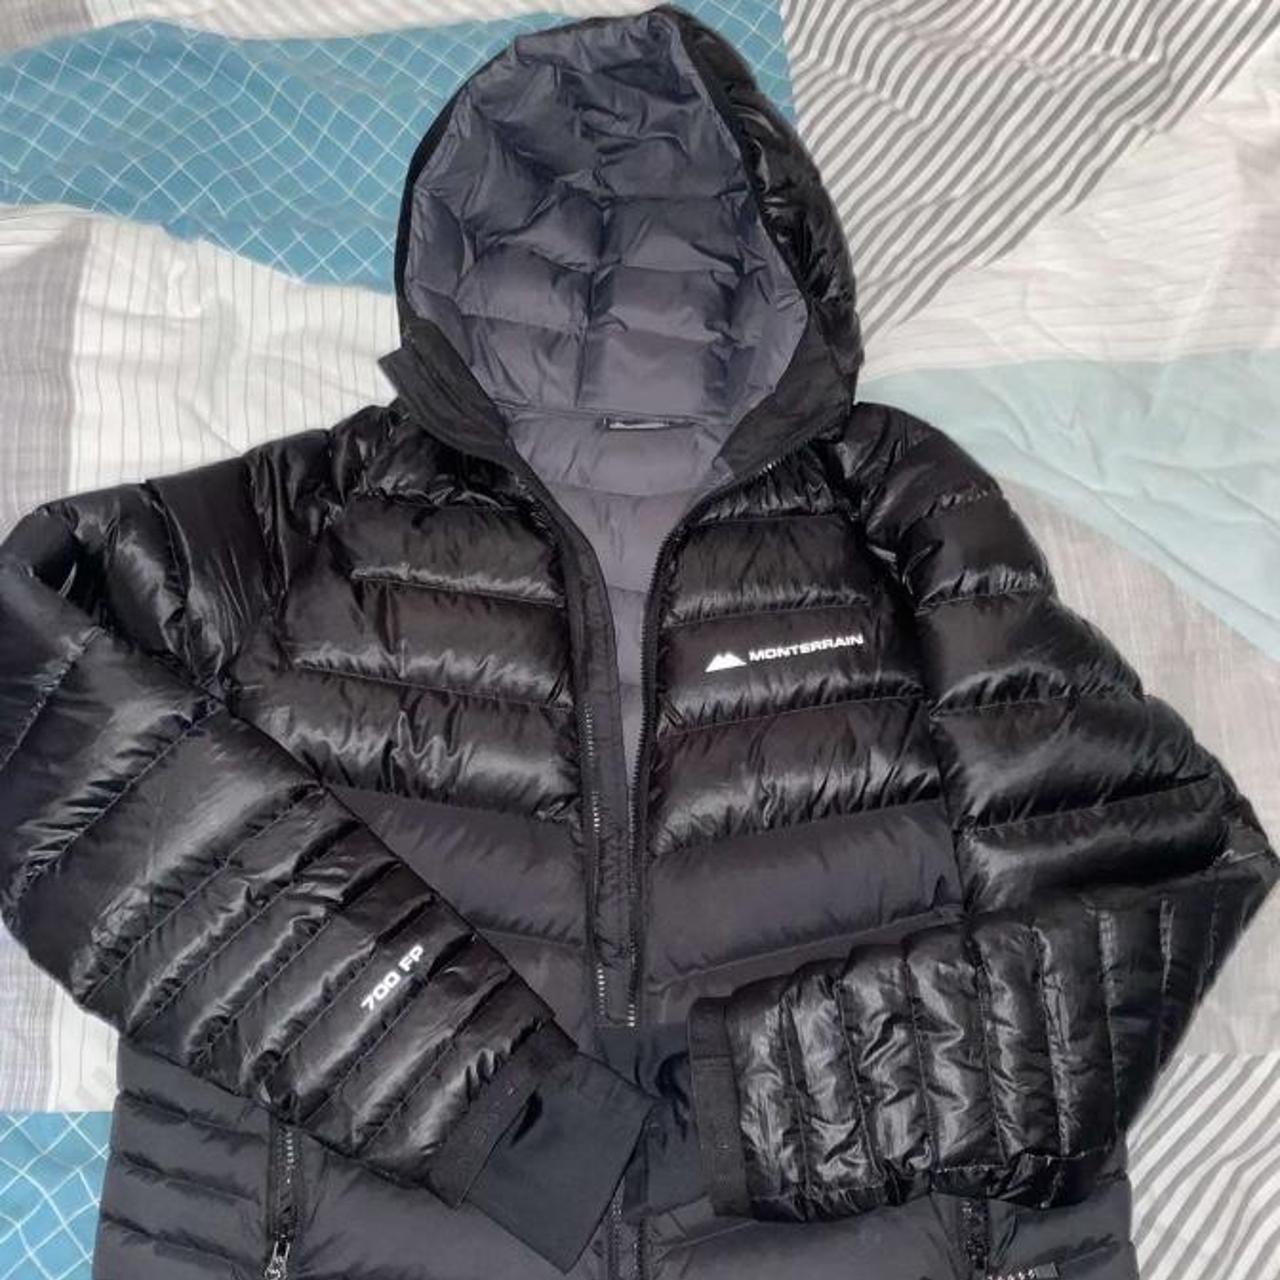 monterrain jacket size large good condition black - Depop